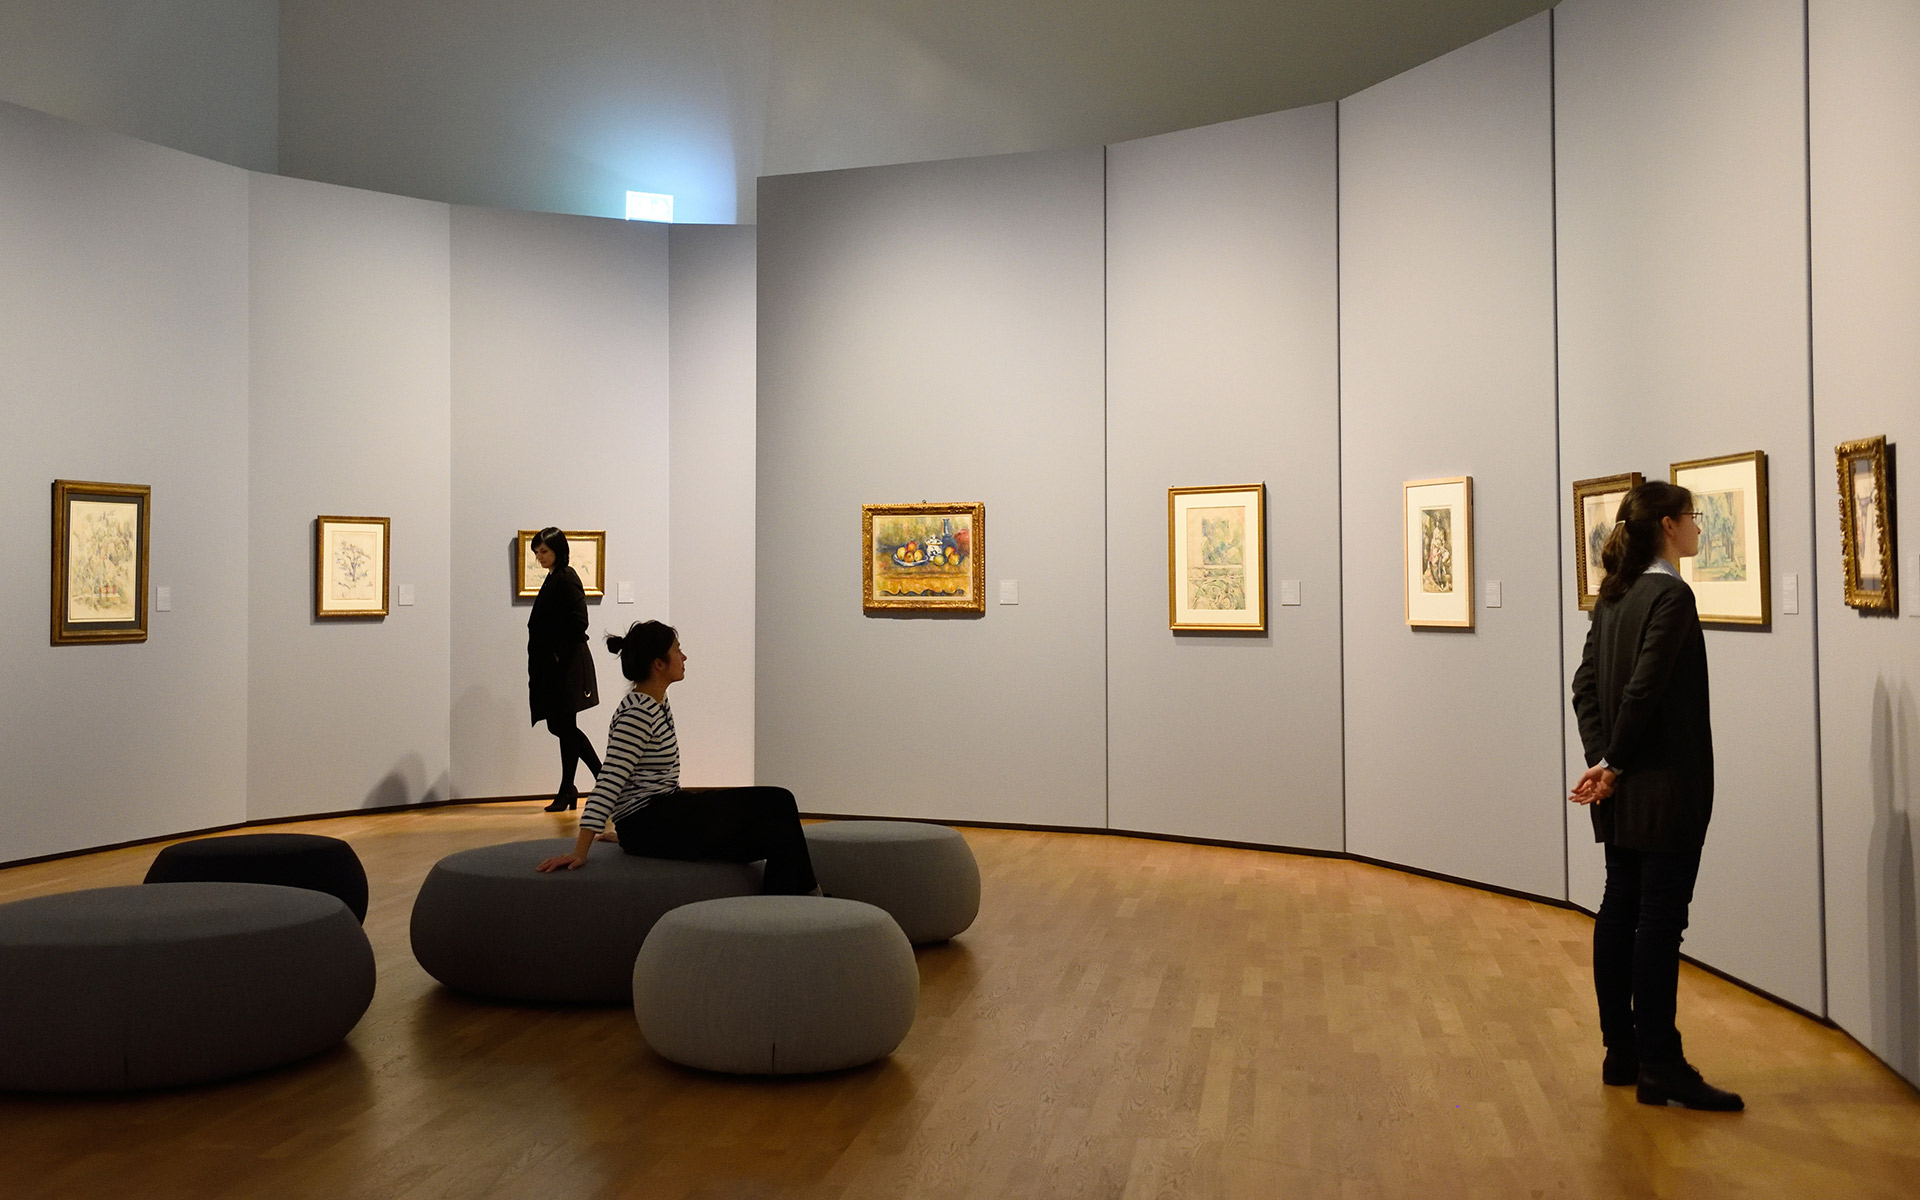 Ein ovaler Raum mit Sitzgelegenheiten in der Mitte. An den Wänden hängen Bilder die von drei Personen betrachtet werden.